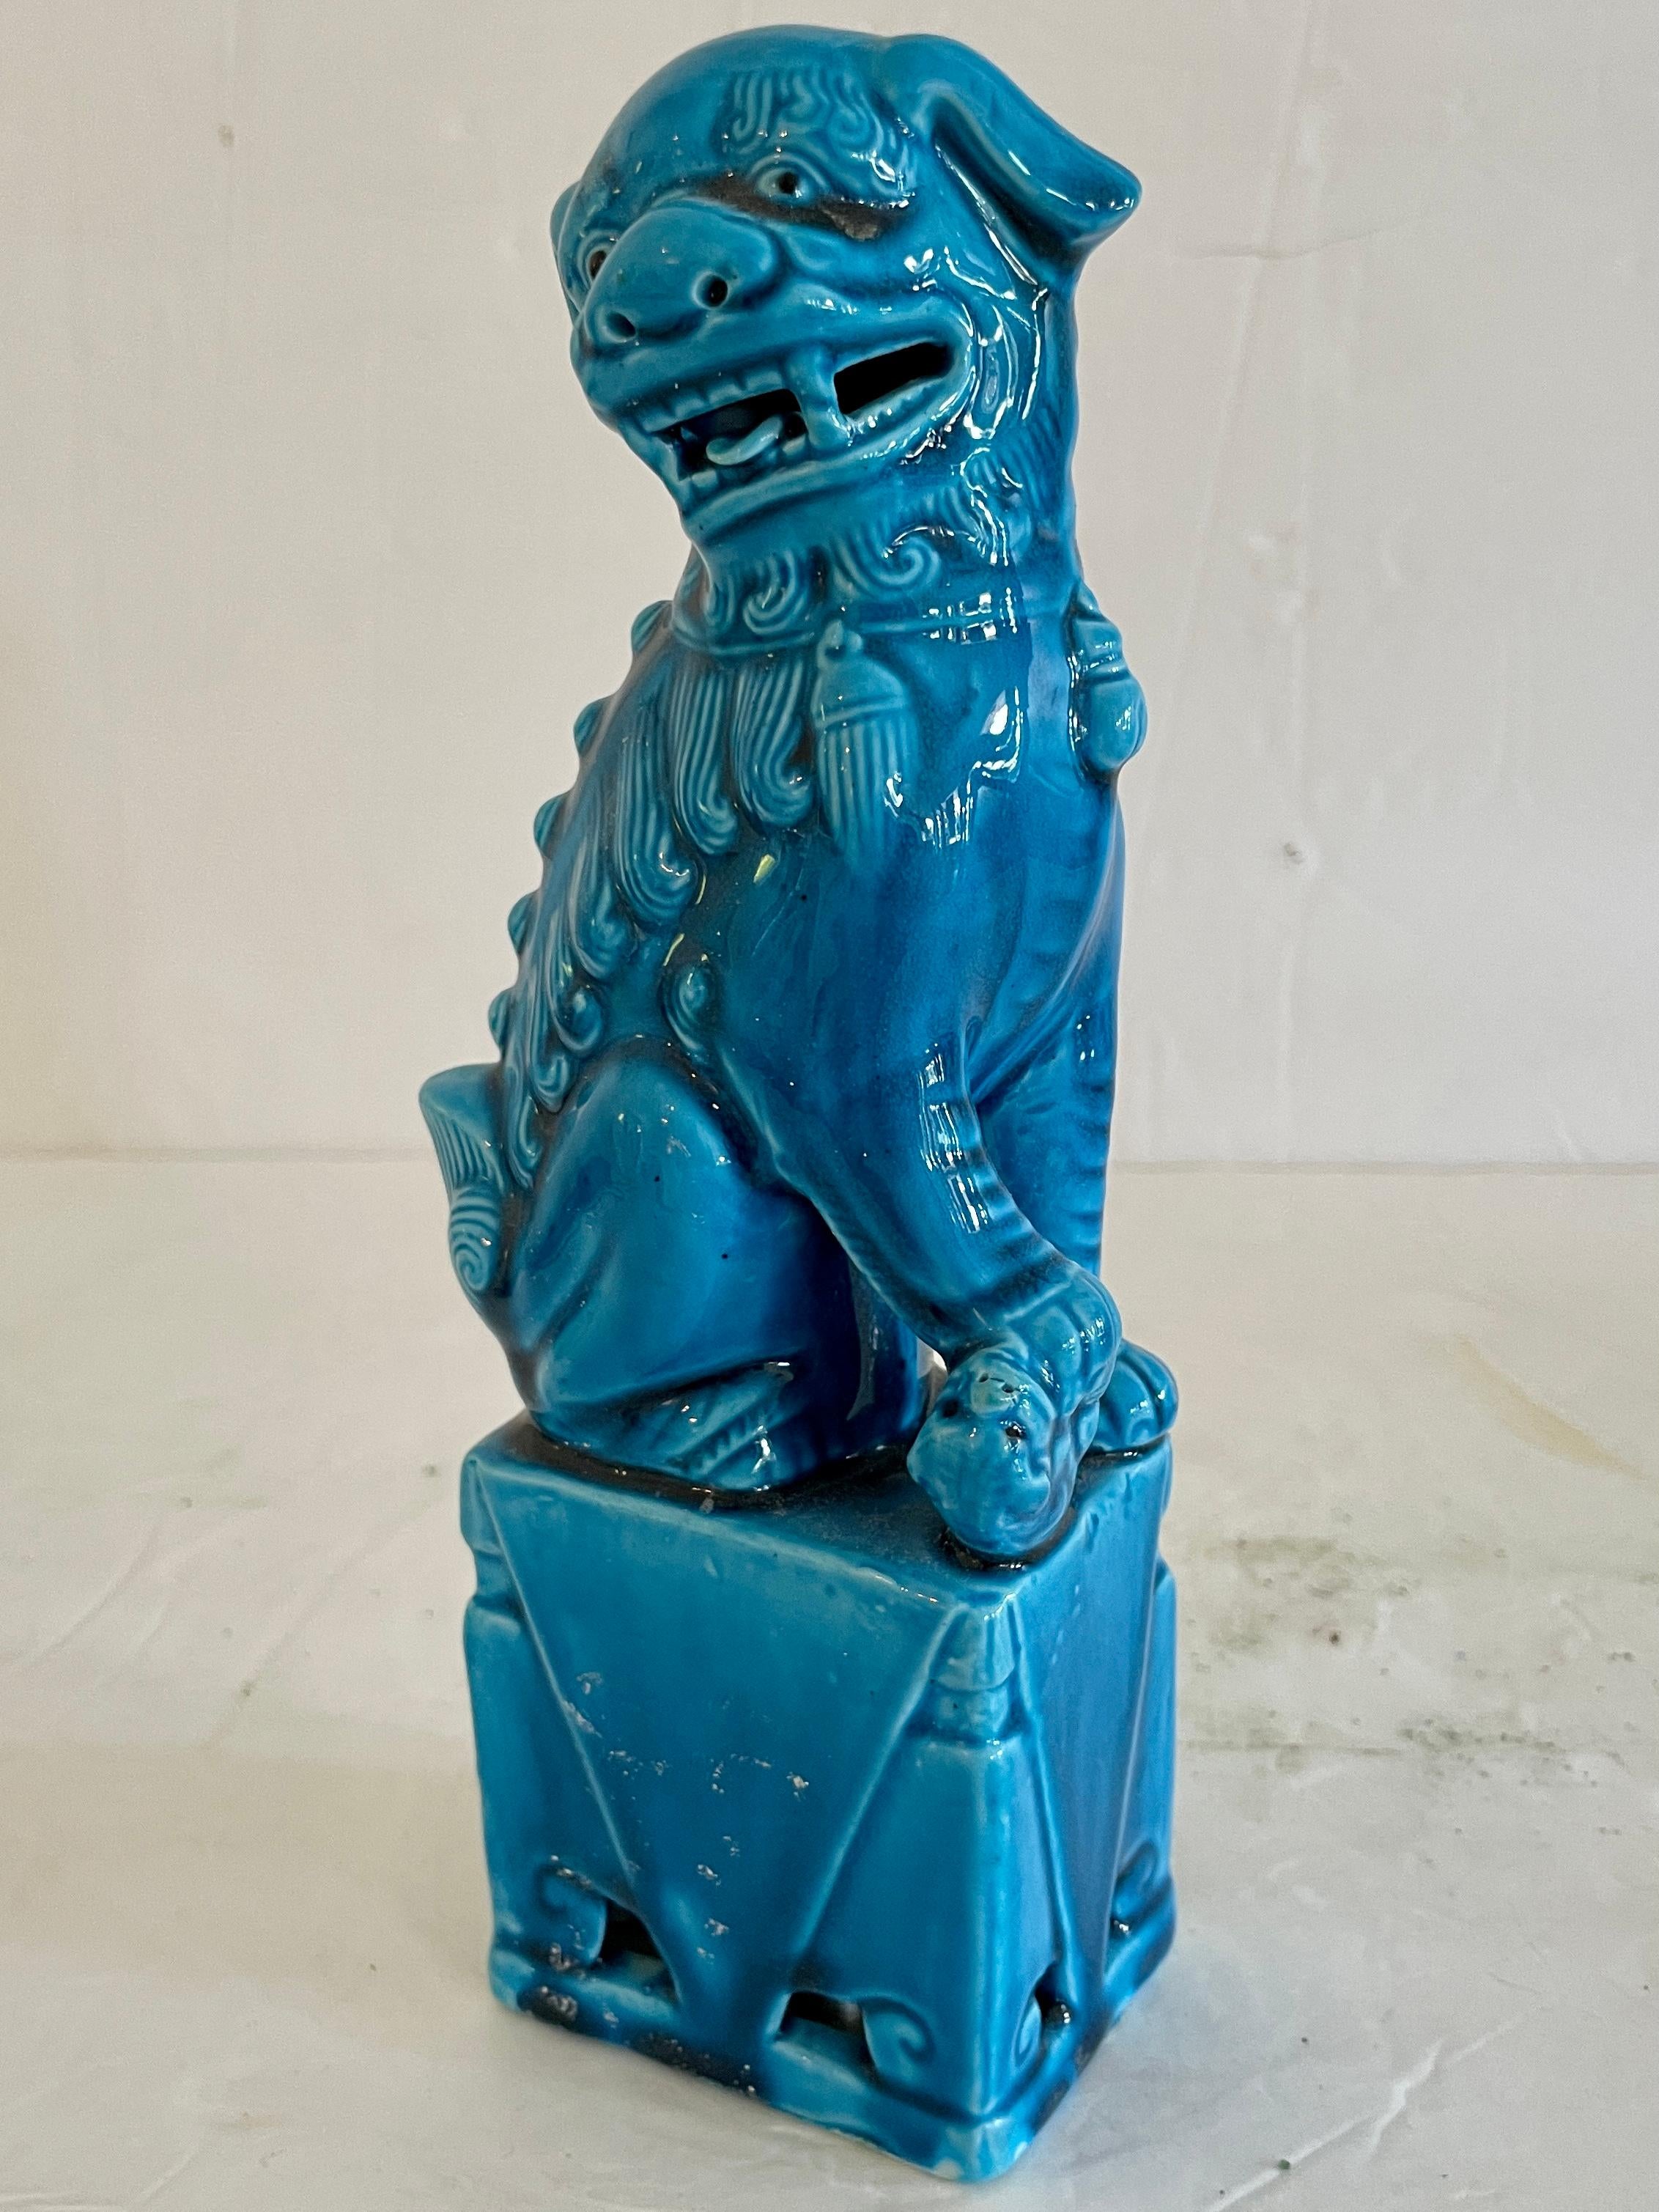 Fabuleuse femelle foo dog en céramique asiatique turquoise. Les détails de la sculpture sont étonnants. Un excellent complément à votre collection de chinoiseries.